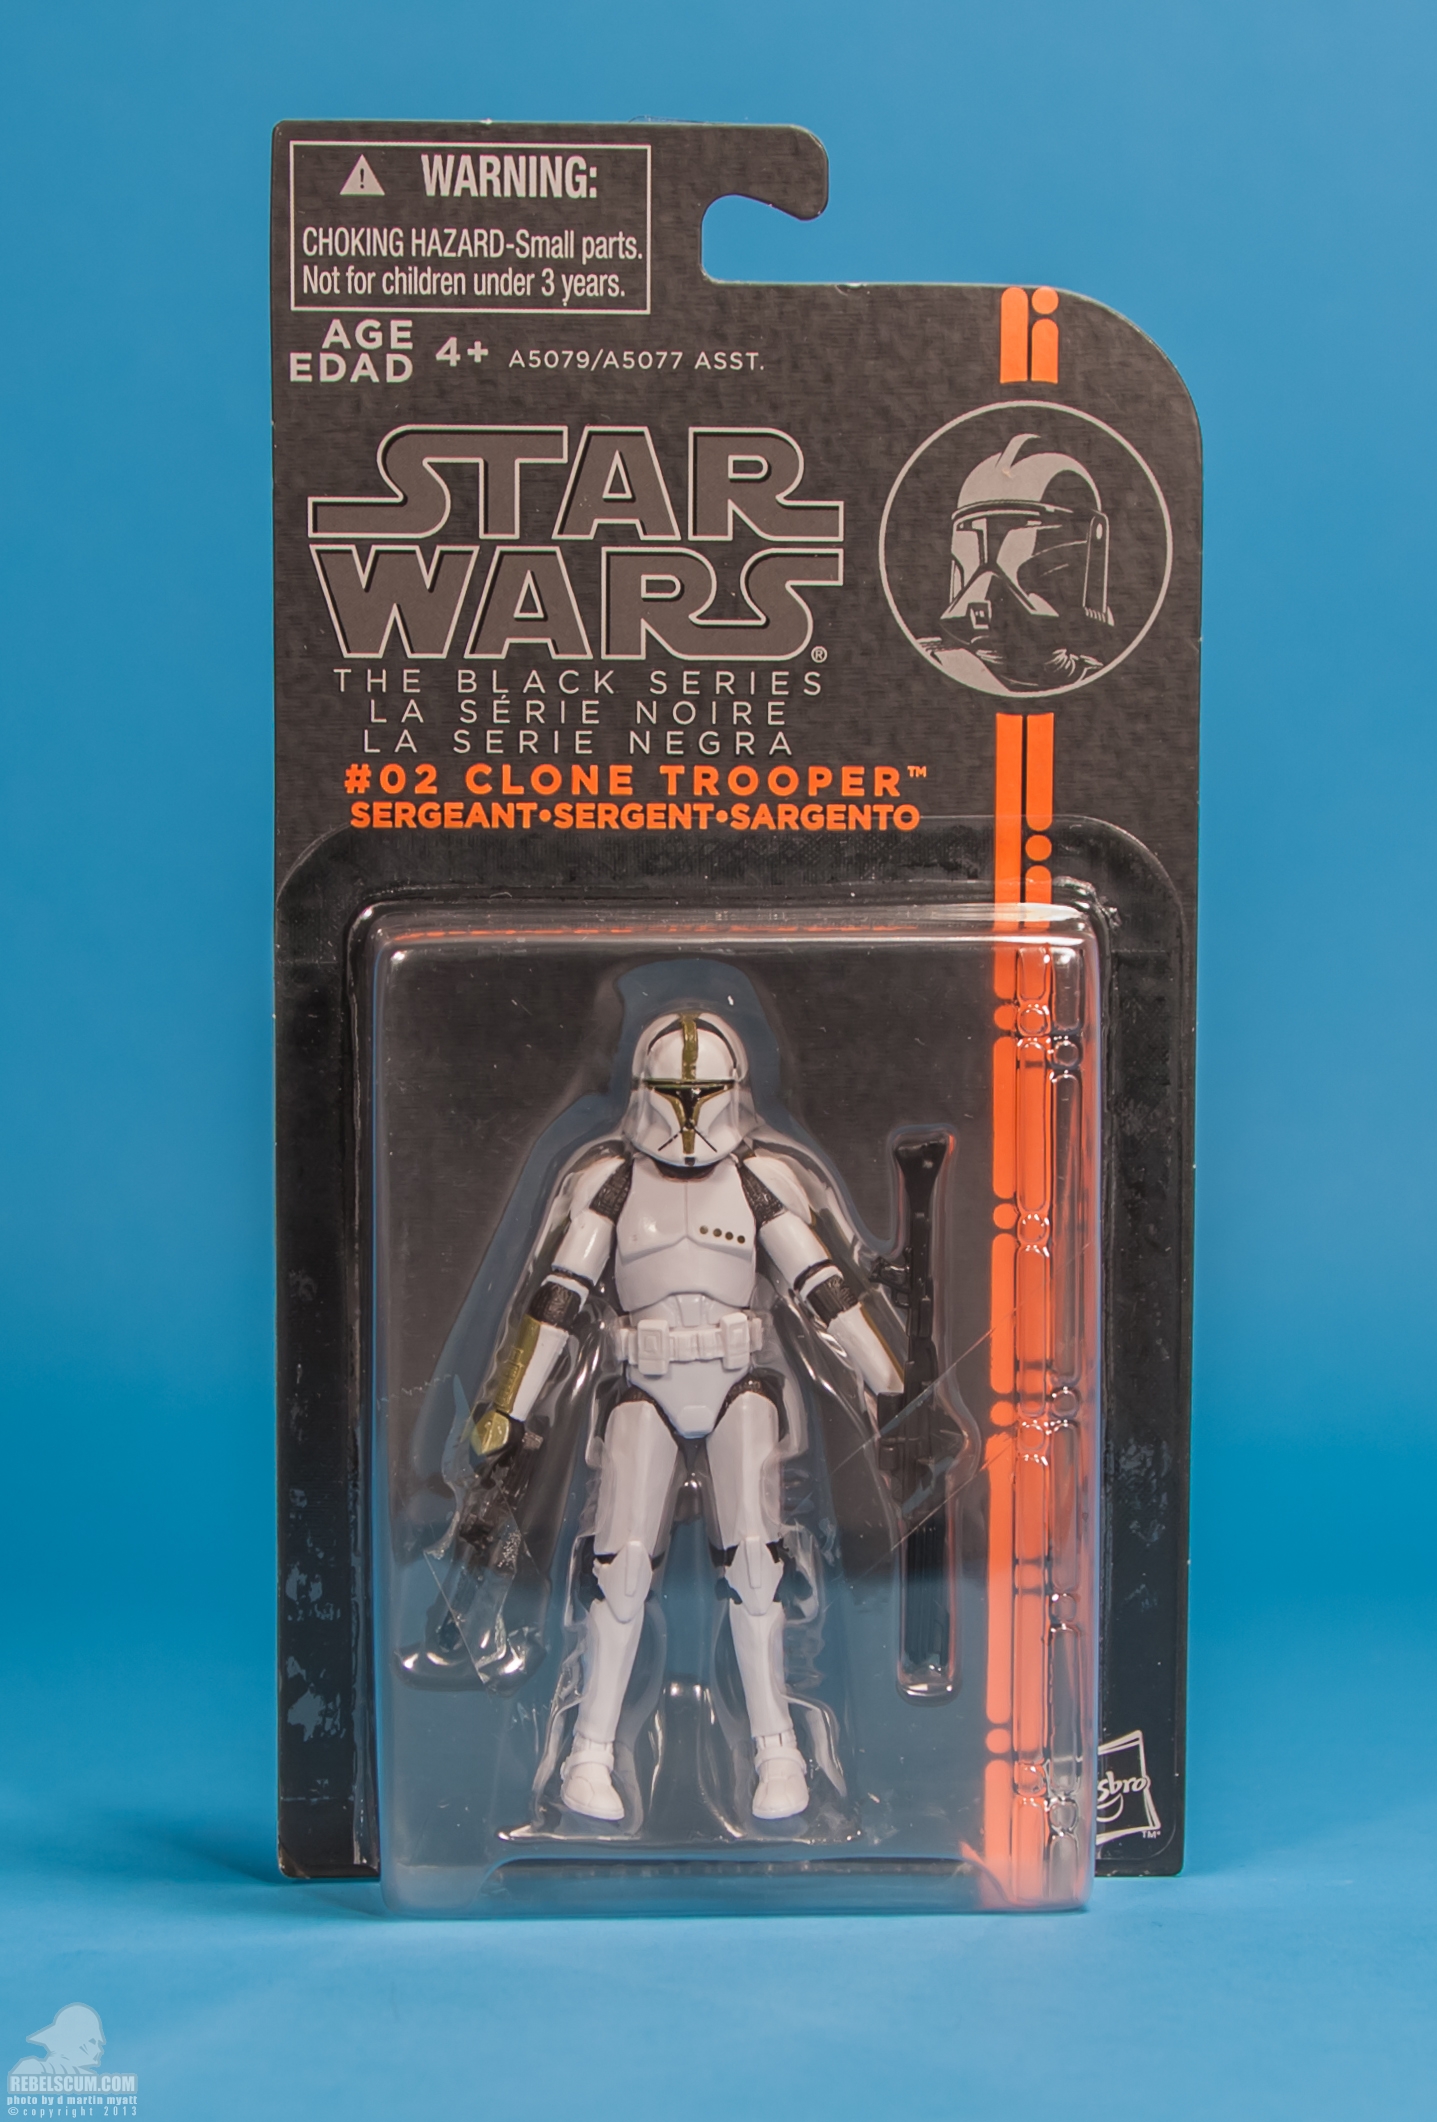 The-Black-Series-Star-Wars-Hasbro-02-Clone-Trooper-Sergeant-028.jpg